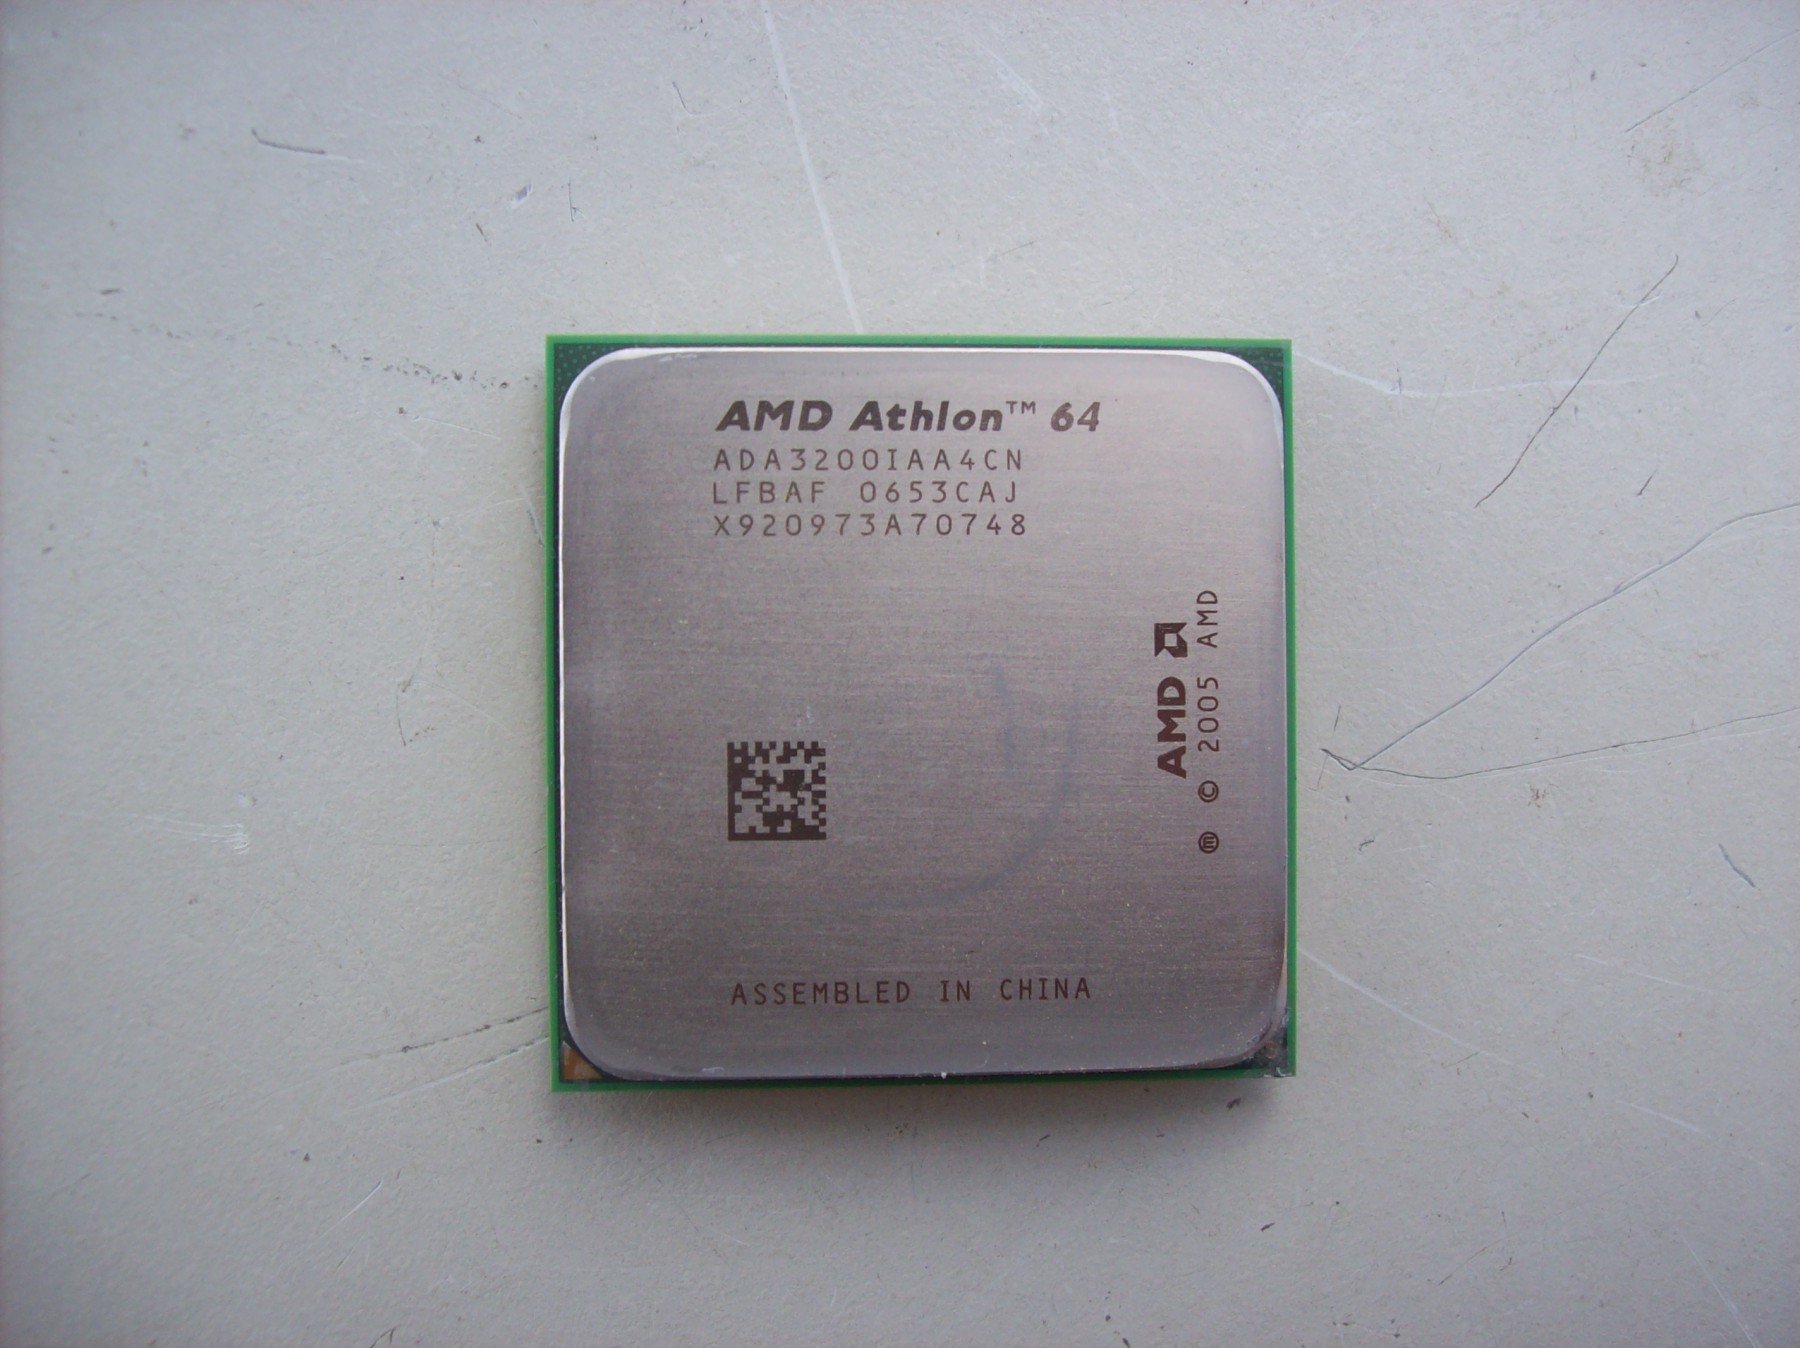 Amd athlon 4400. AMD Athlon 64 2001 года. Атлон 64 2003 года. ООО Атлон. АМД Атлон 64 ада 3200iaa4cn цена.